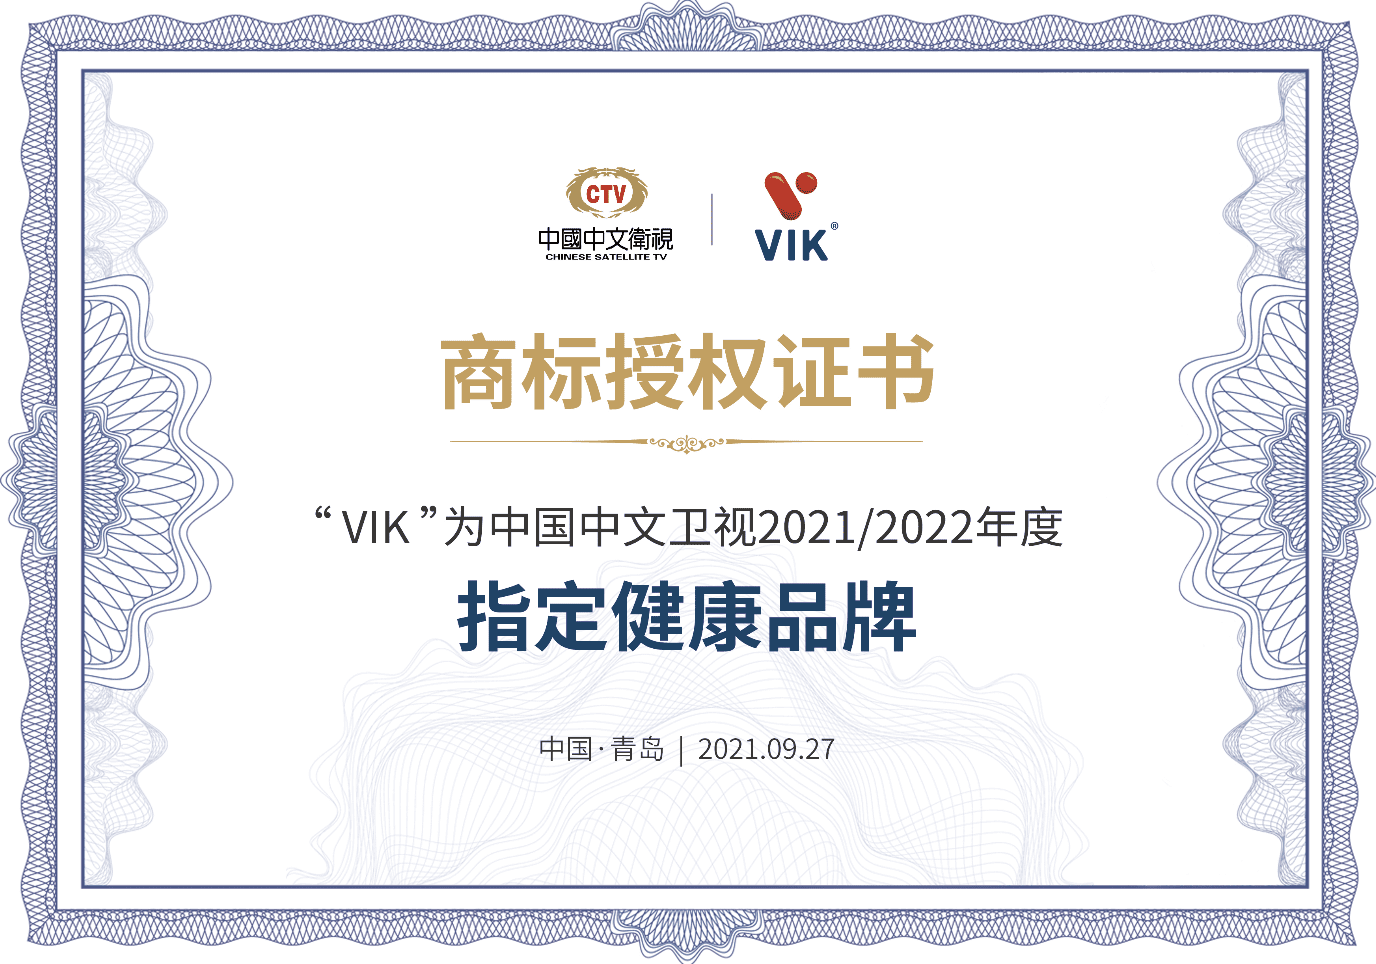 VIK荣获中文卫视2021年“指定健康产品”荣誉称号